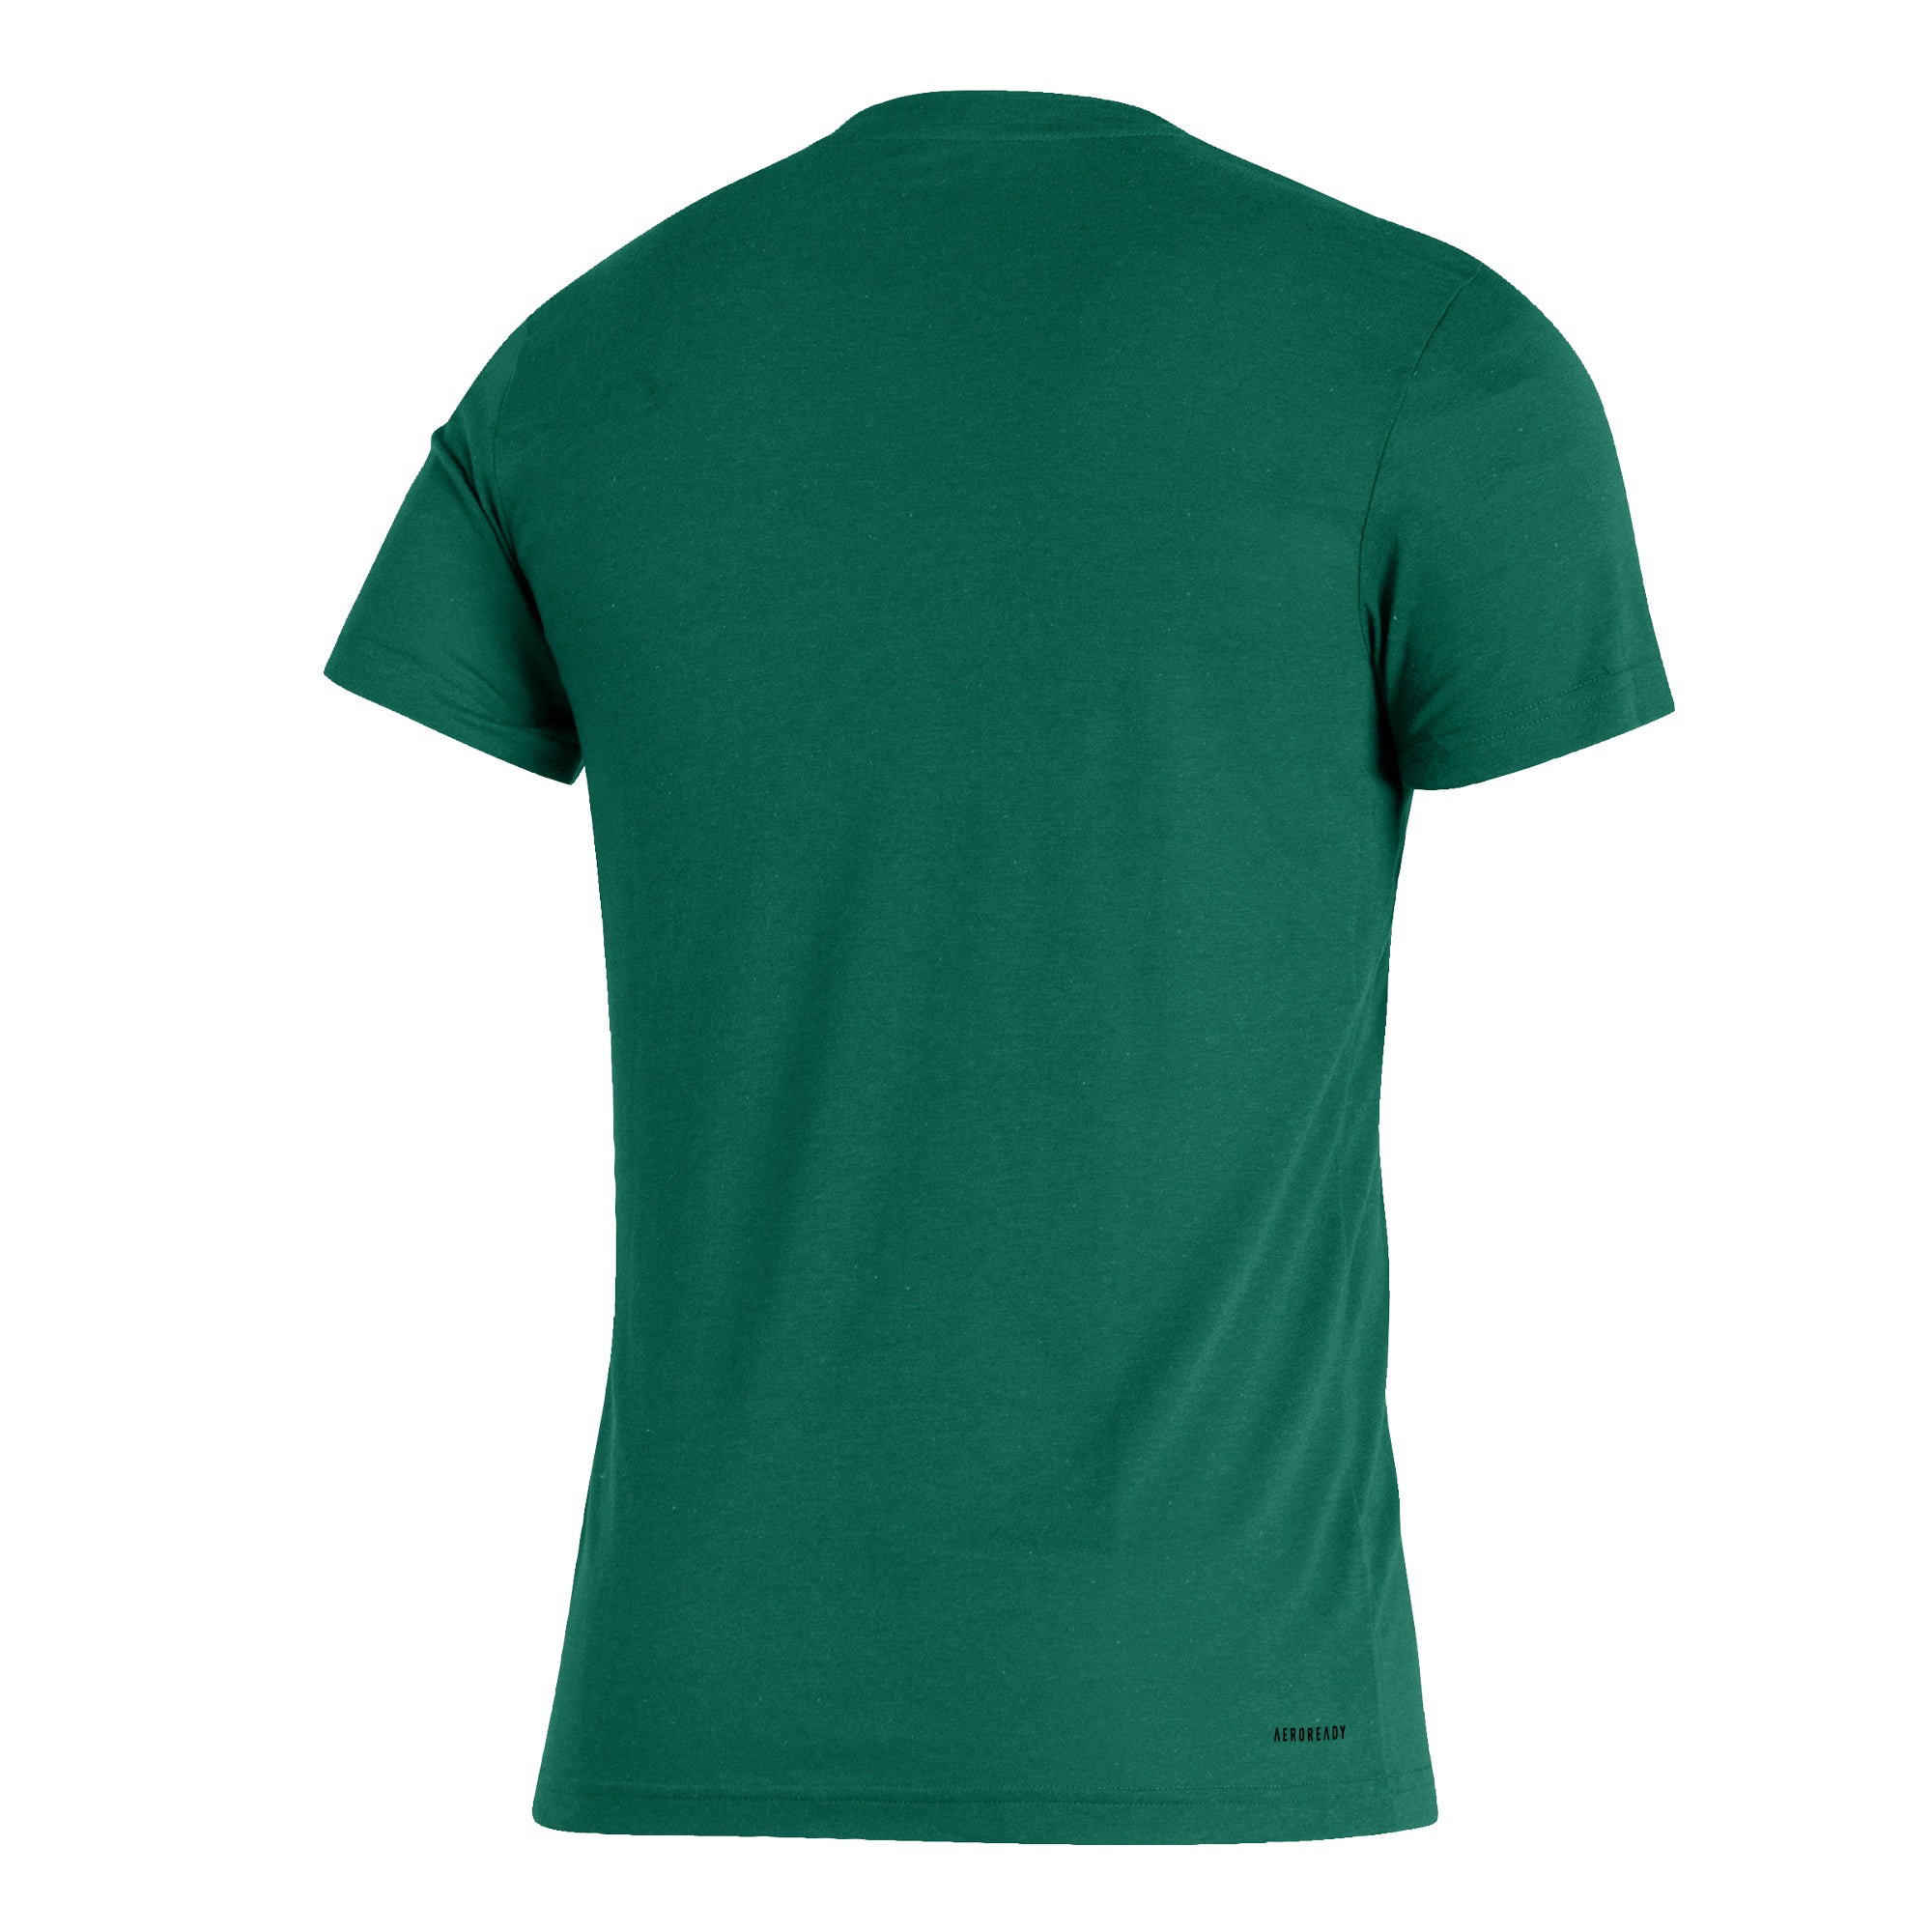 Miami Hurricanes 2022 adidas Retro Established Tri-Blend T-Shirt - Green